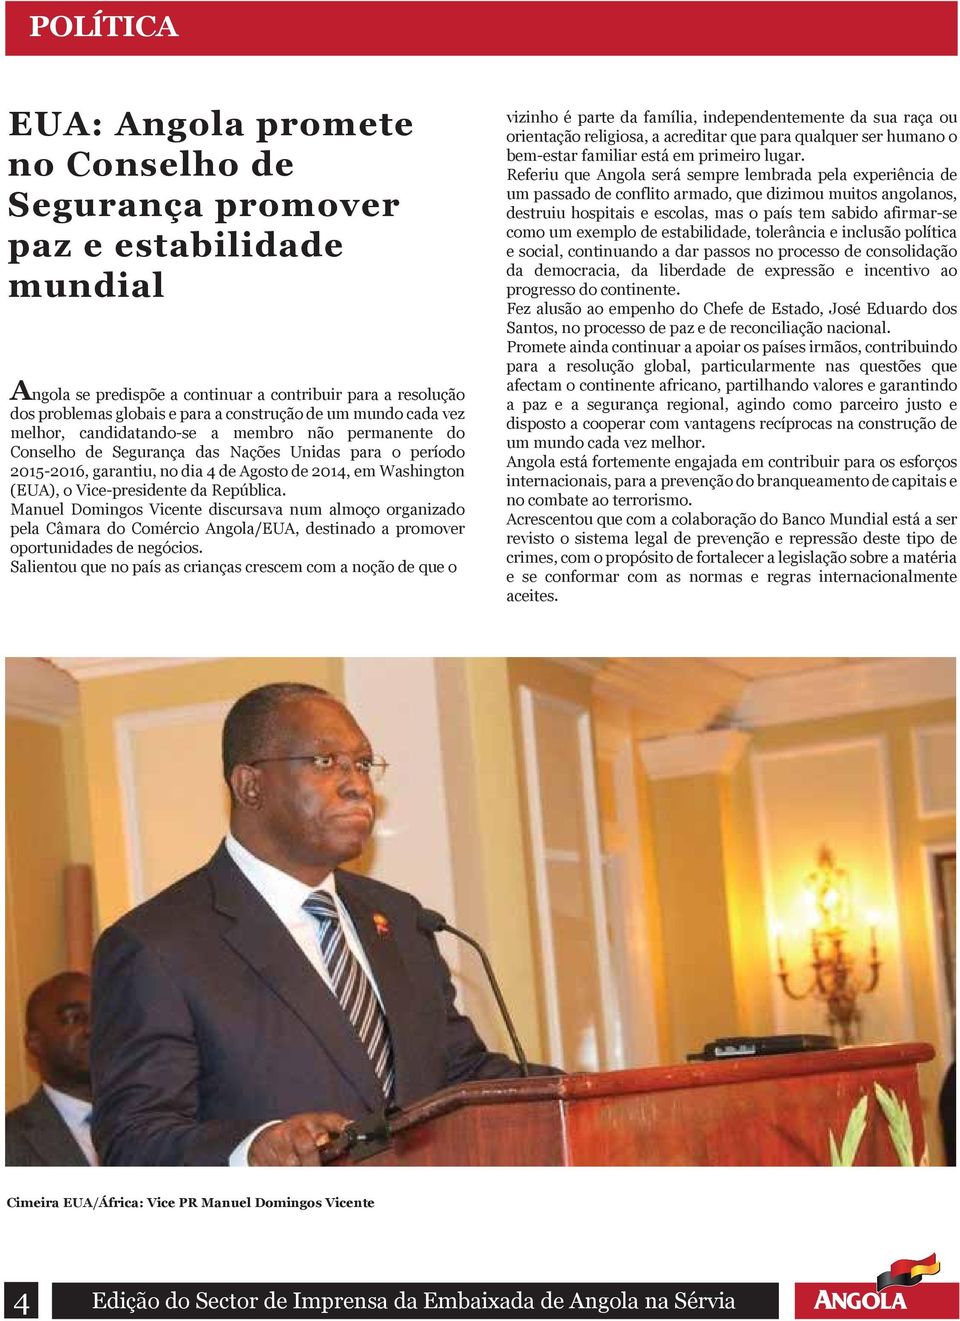 Vice-presidente da República. Manuel Domingos Vicente discursava num almoço organizado pela Câmara do Comércio Angola/EUA, destinado a promover oportunidades de negócios.